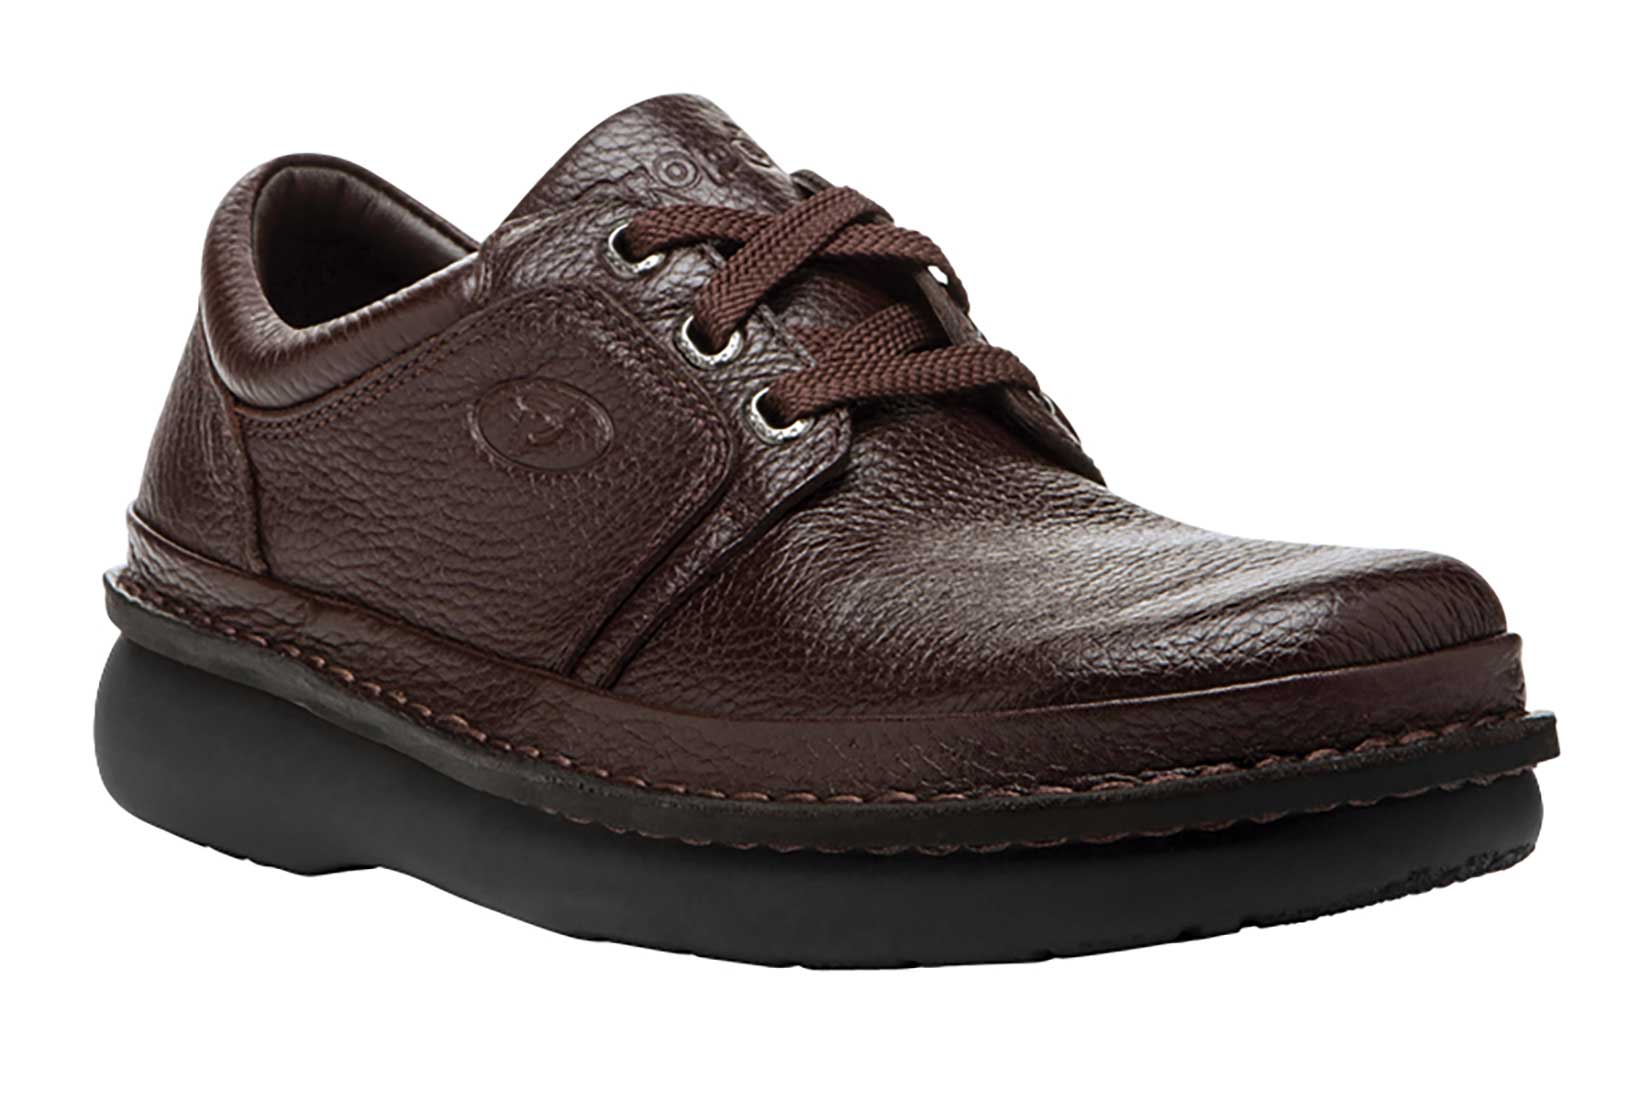 Men/'s Propet  Villager Medicare Approved Leather Comfort Shoes Brown M4070